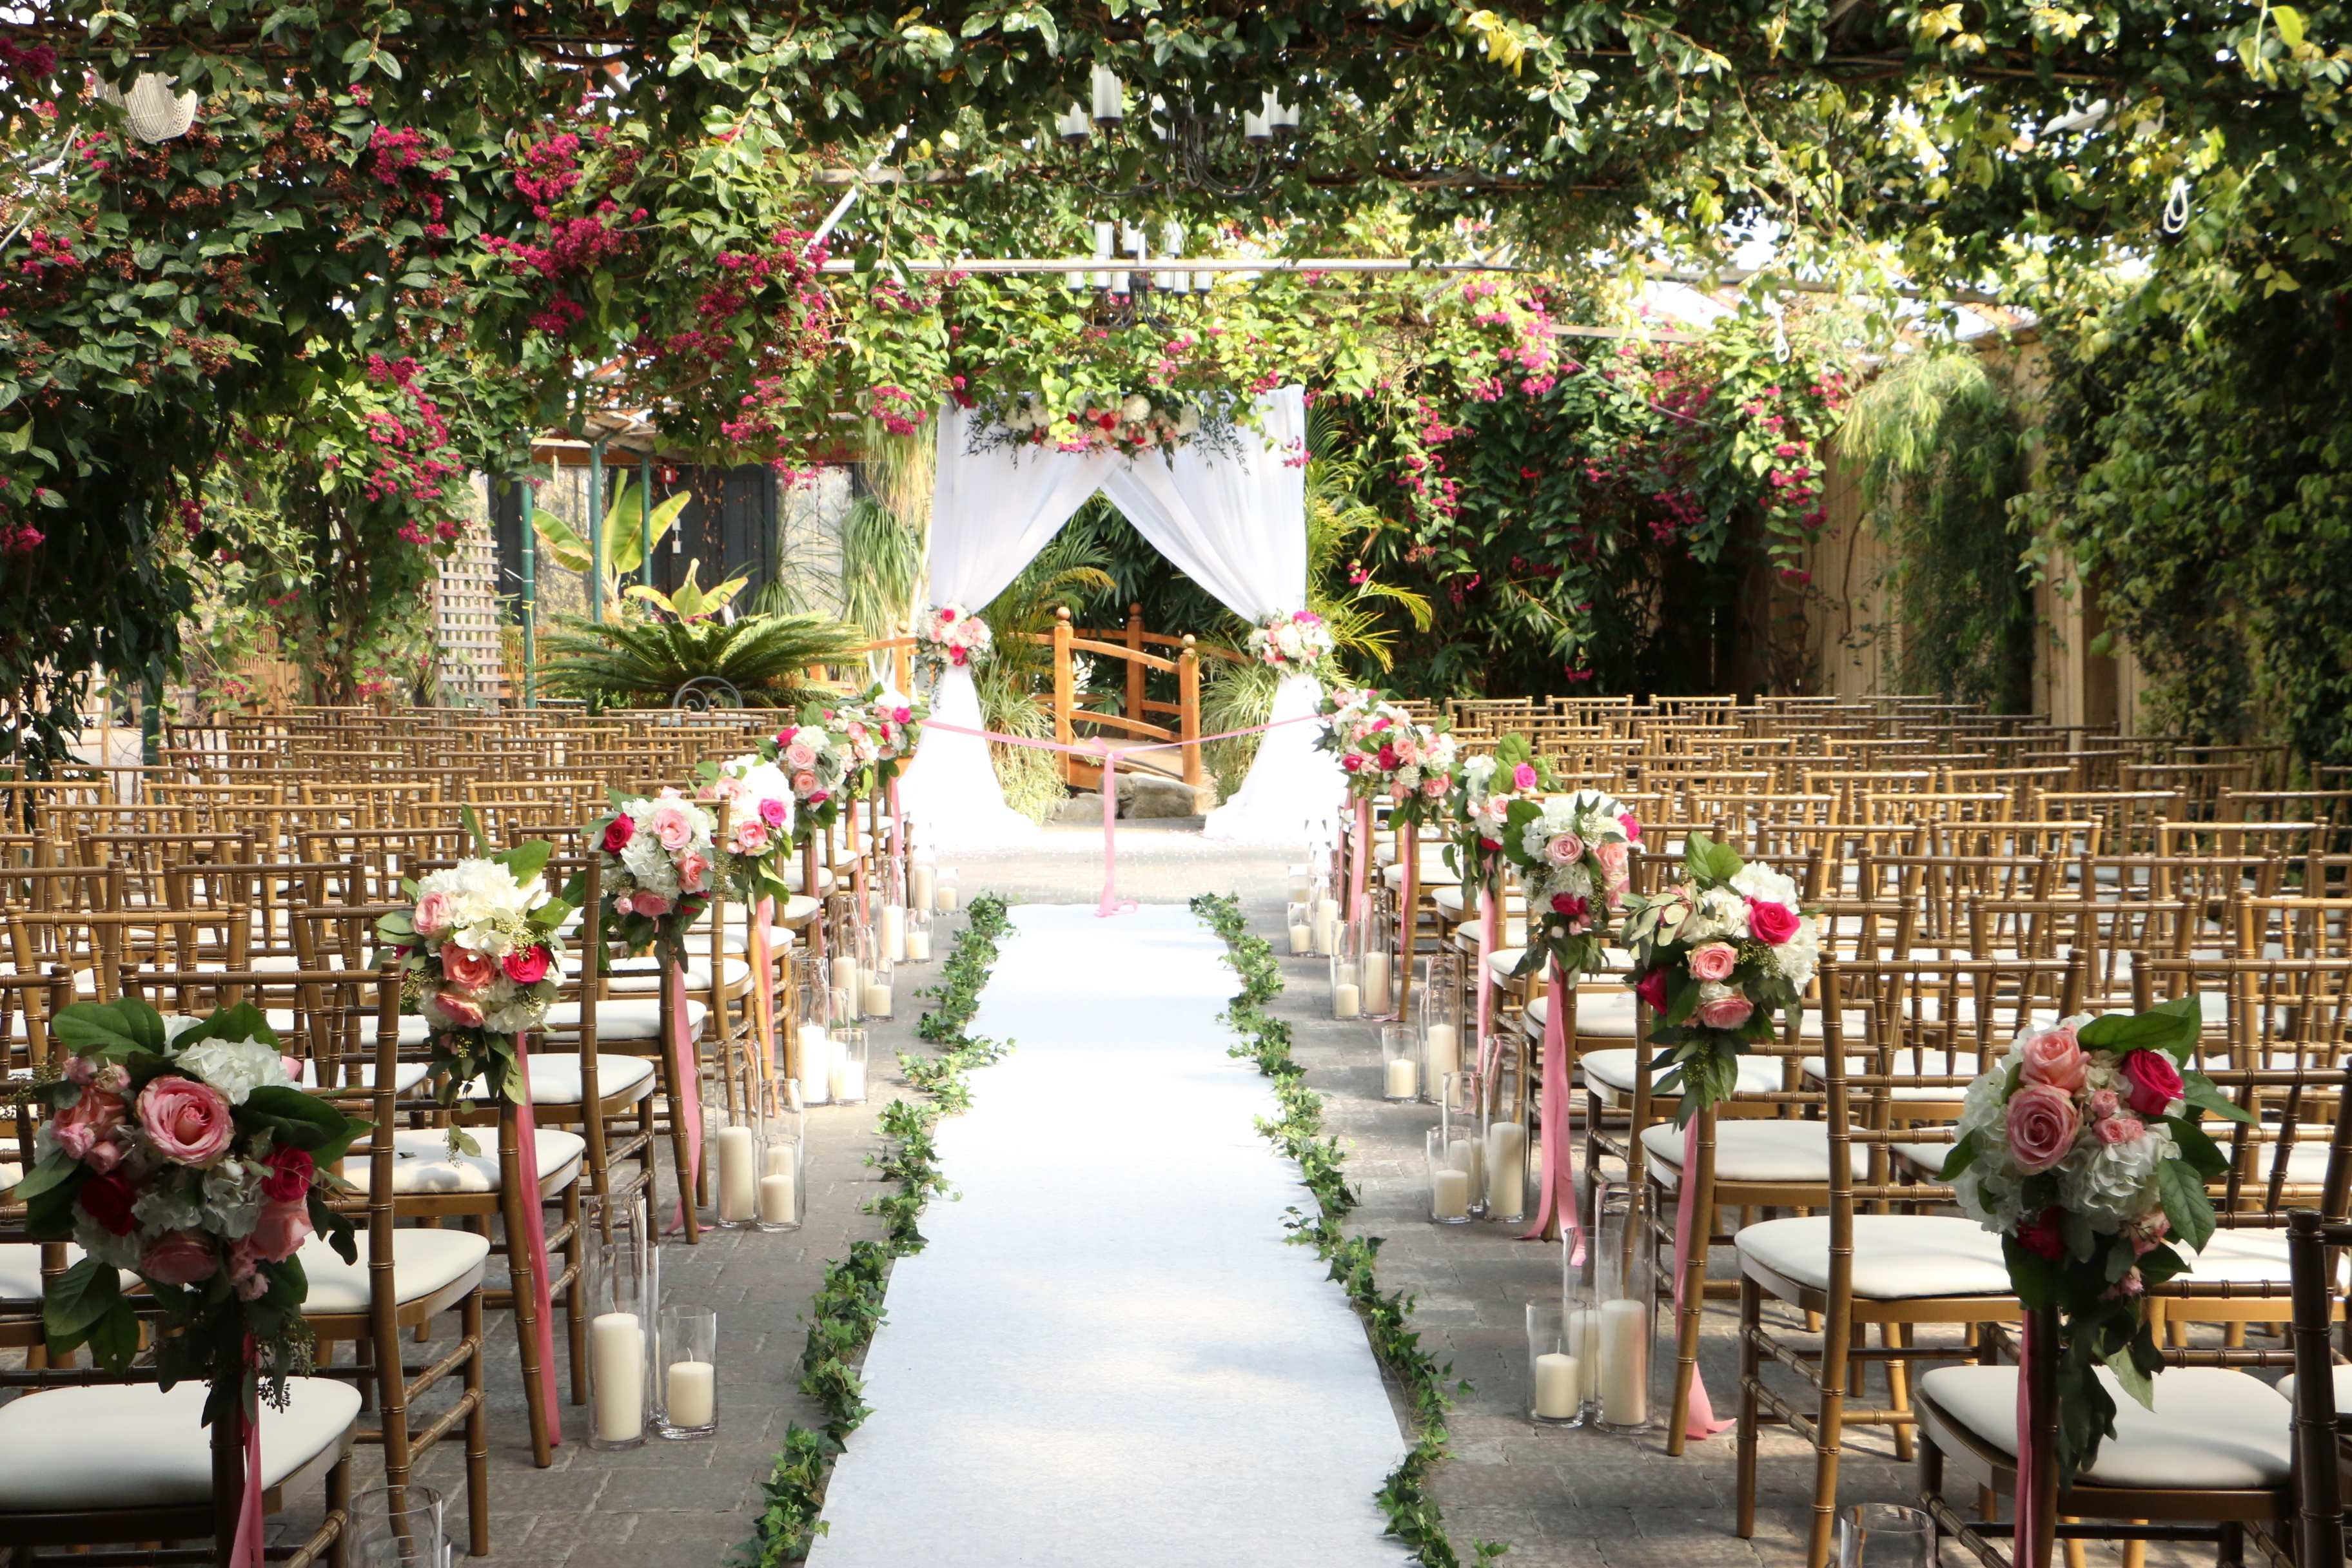 Un lugar de bodas vacío | Fuente: Shutterstock